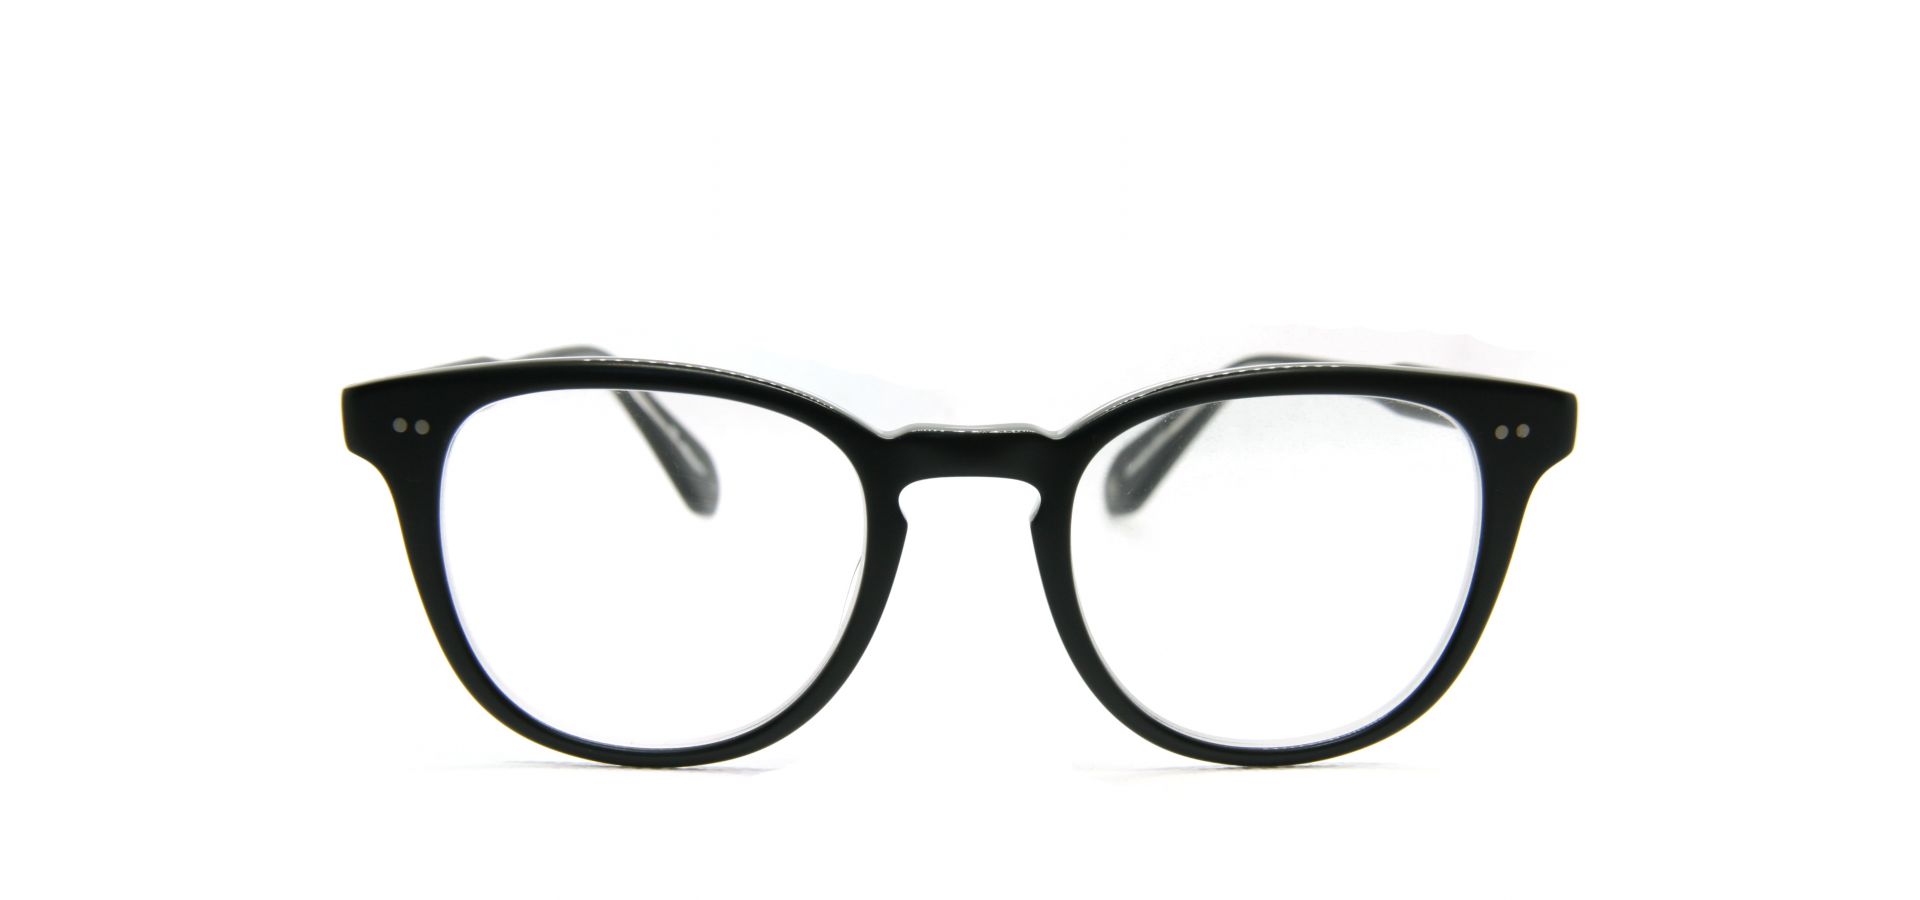 Korekcijska očala Garrett Leight MYKINLEY 45 MATTE BLACK LAMINATE CRYSTAL: Velikost: 45/22, Spol: unisex, Material: acetat